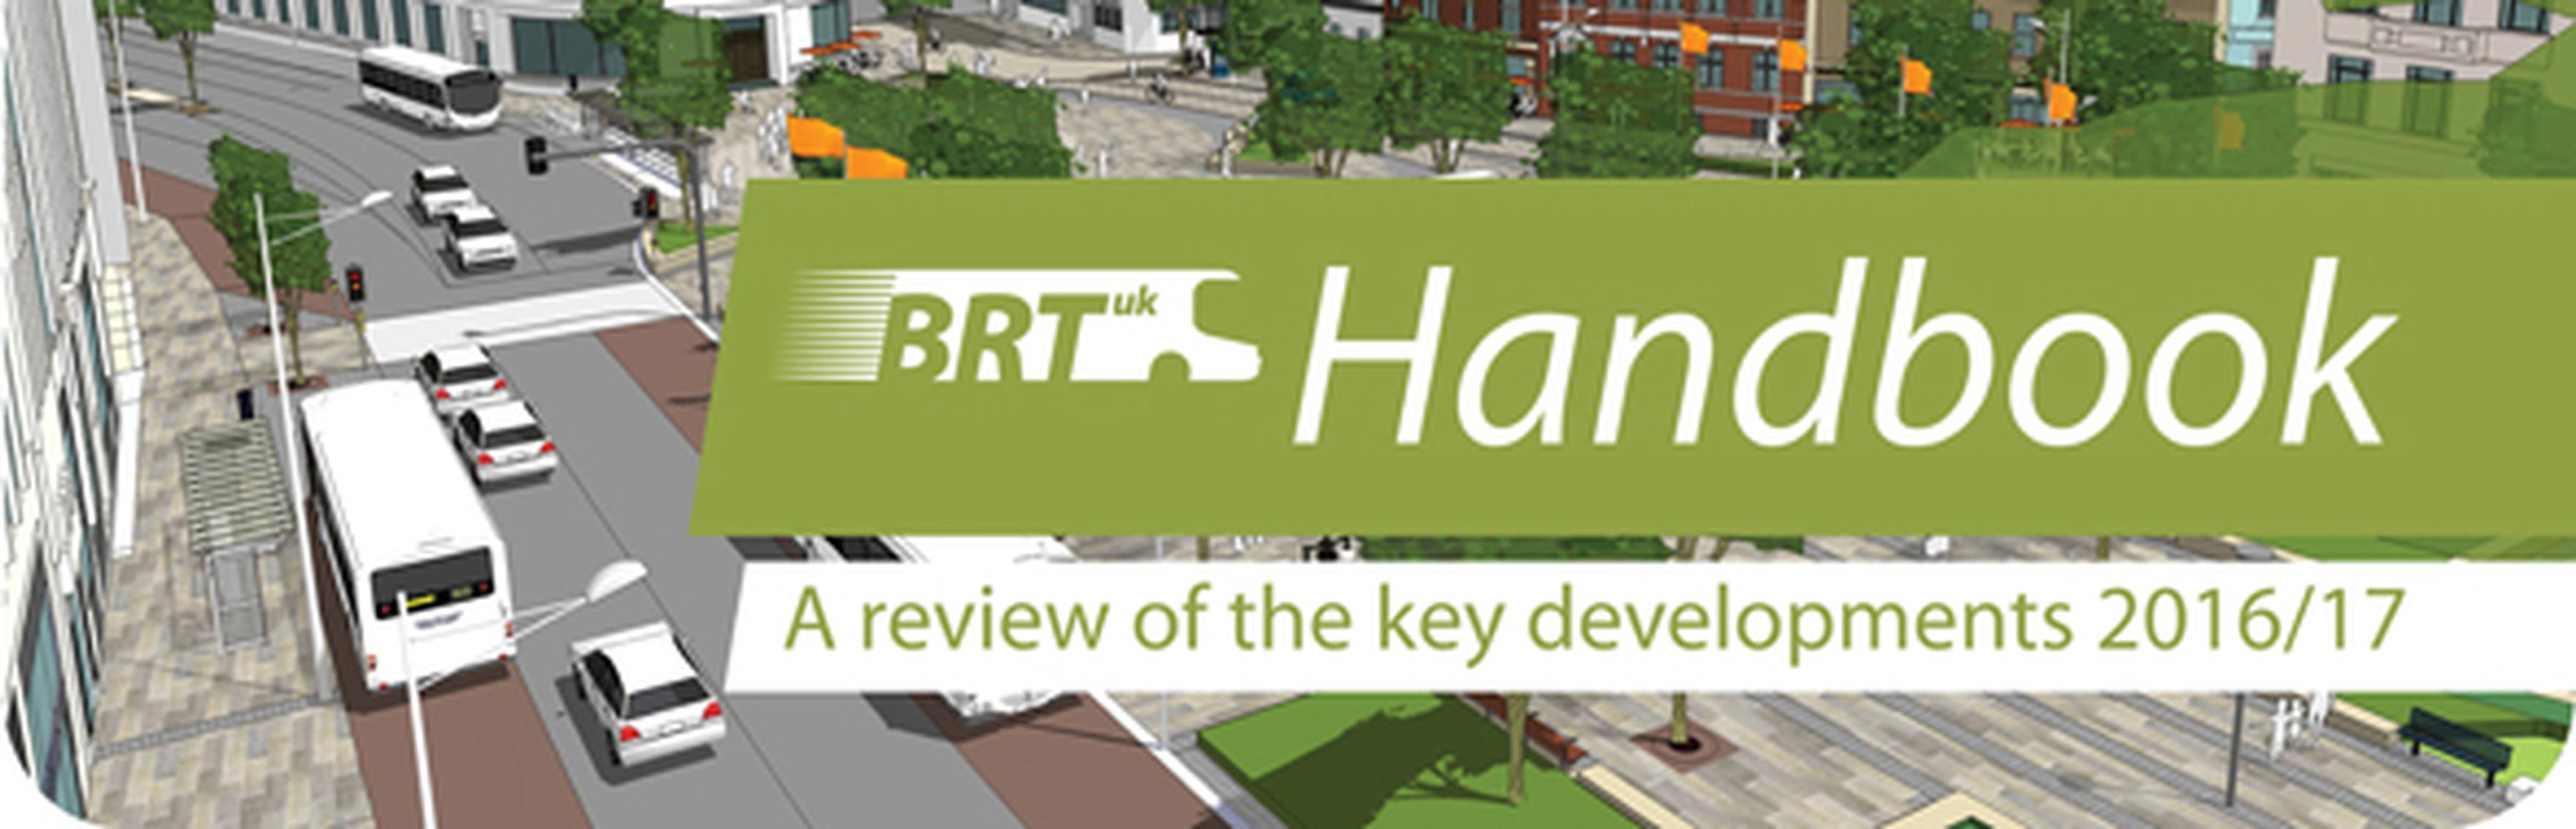 BRT Handbook 2016/17